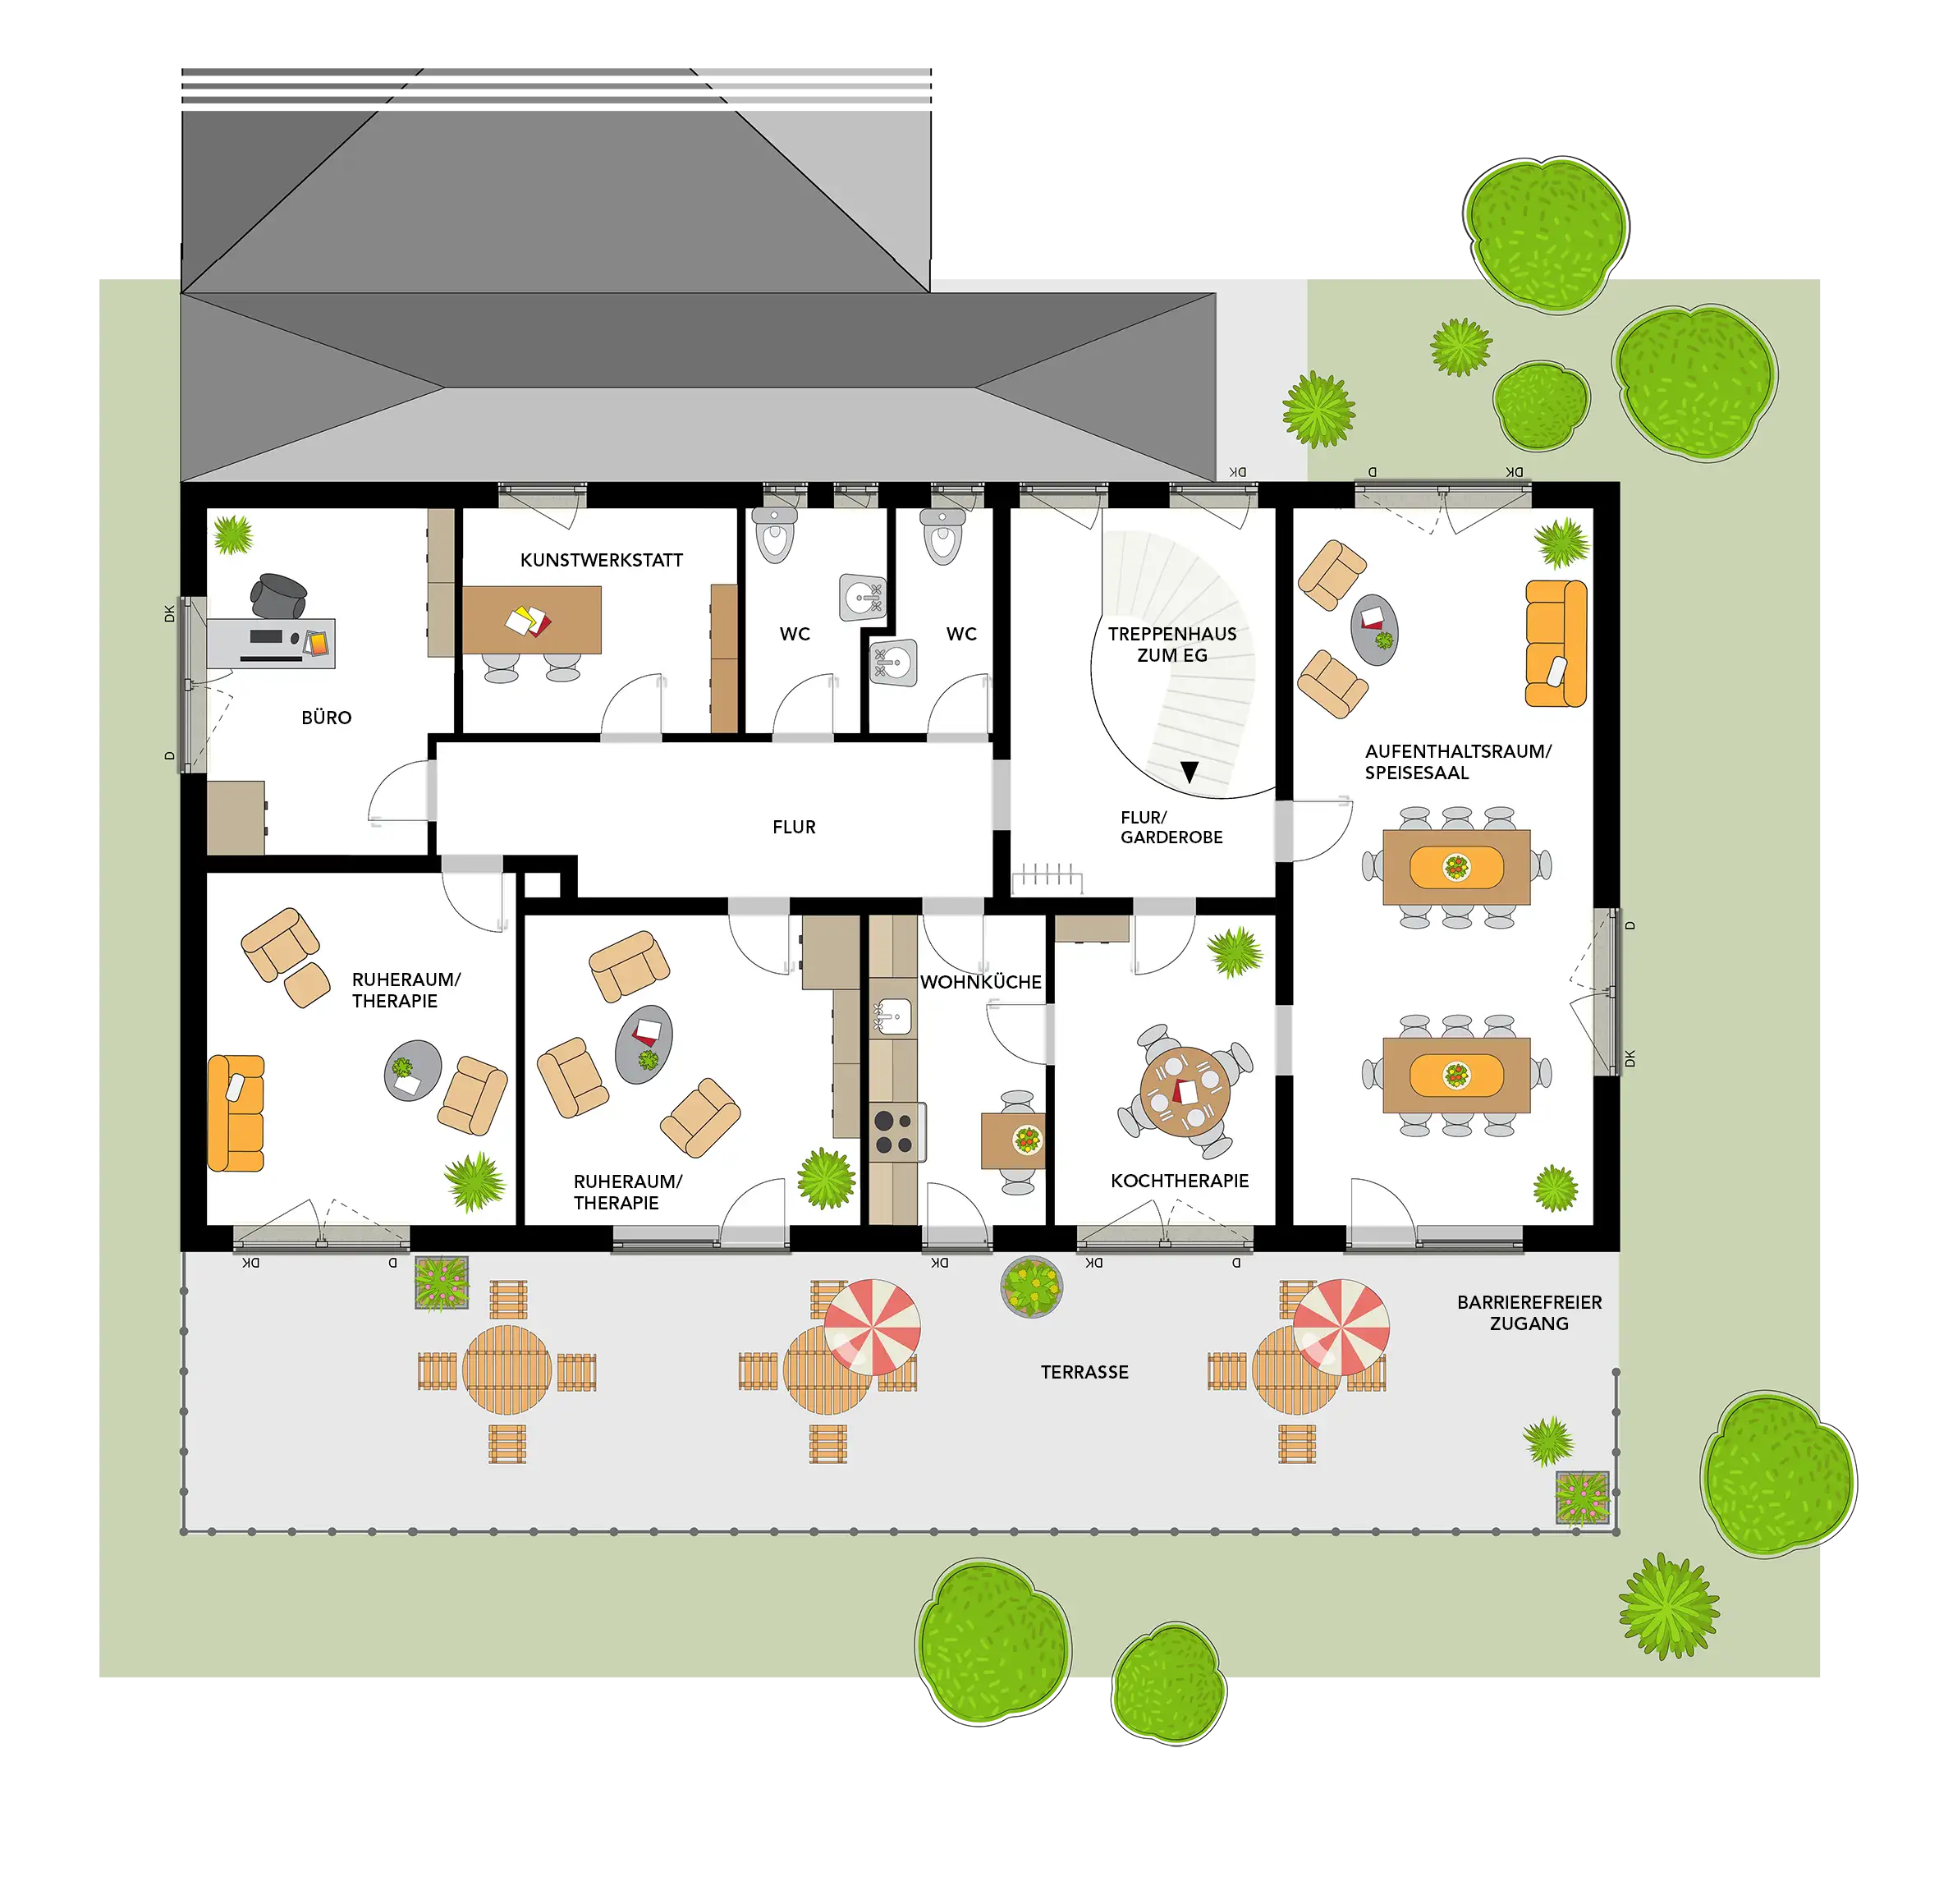 Grundriss mit den verschiedenen Räumlichkeiten der Tagespflege Betreuungsstuben Cadolzburg sowie einer großzügigen Terrasse mit barrierefreiem Zugang.